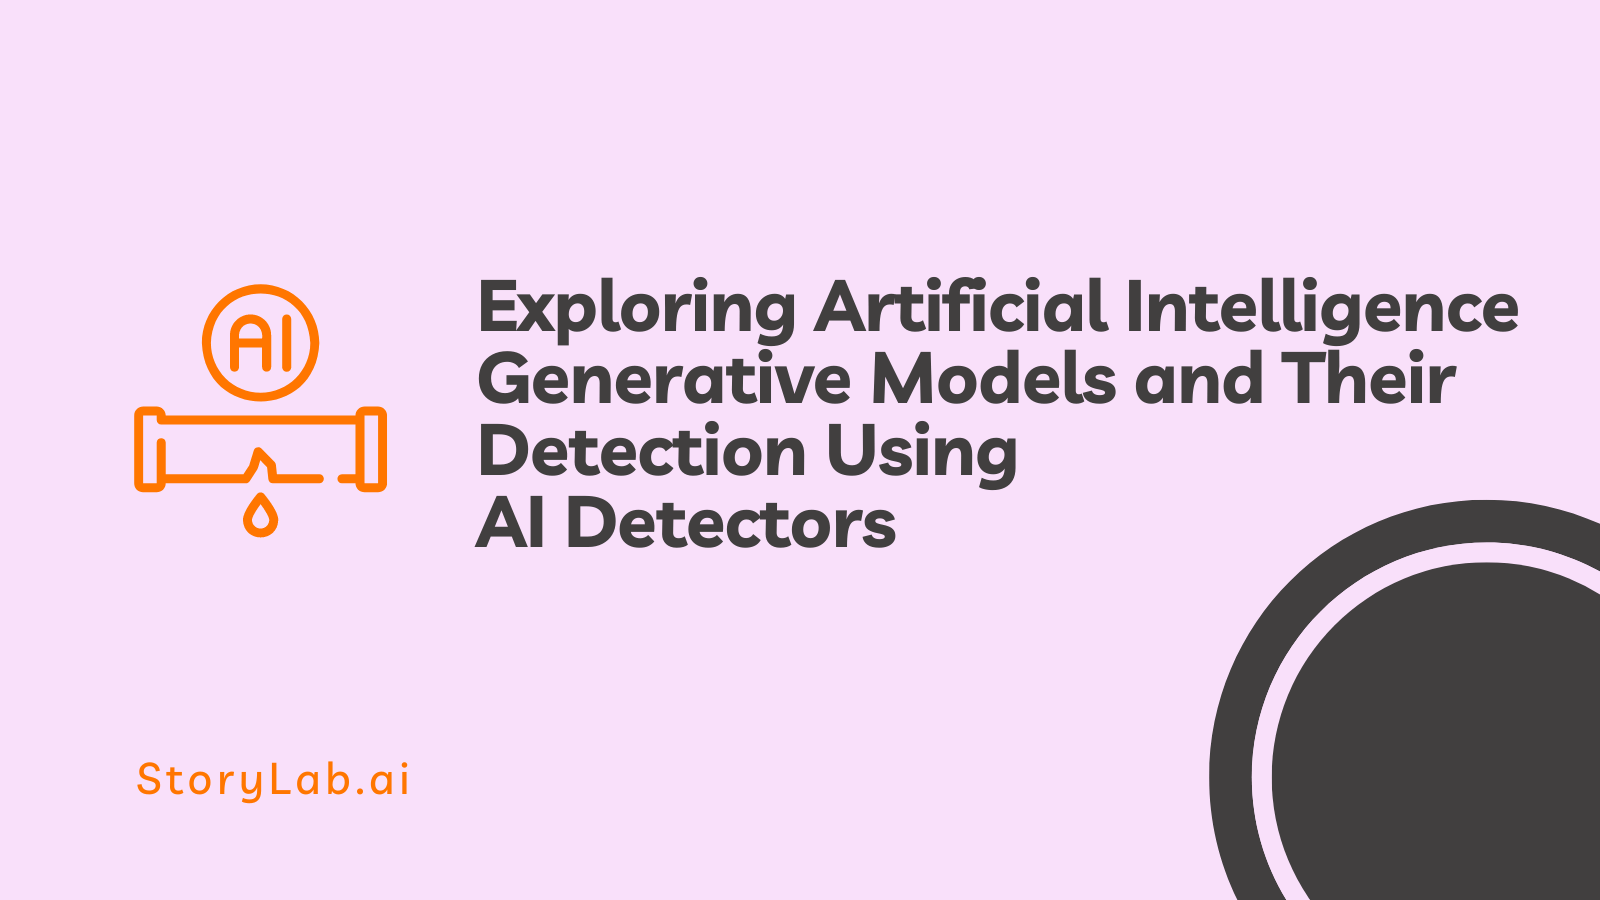 Exploración de modelos generativos de inteligencia artificial y su detección mediante detectores de IA